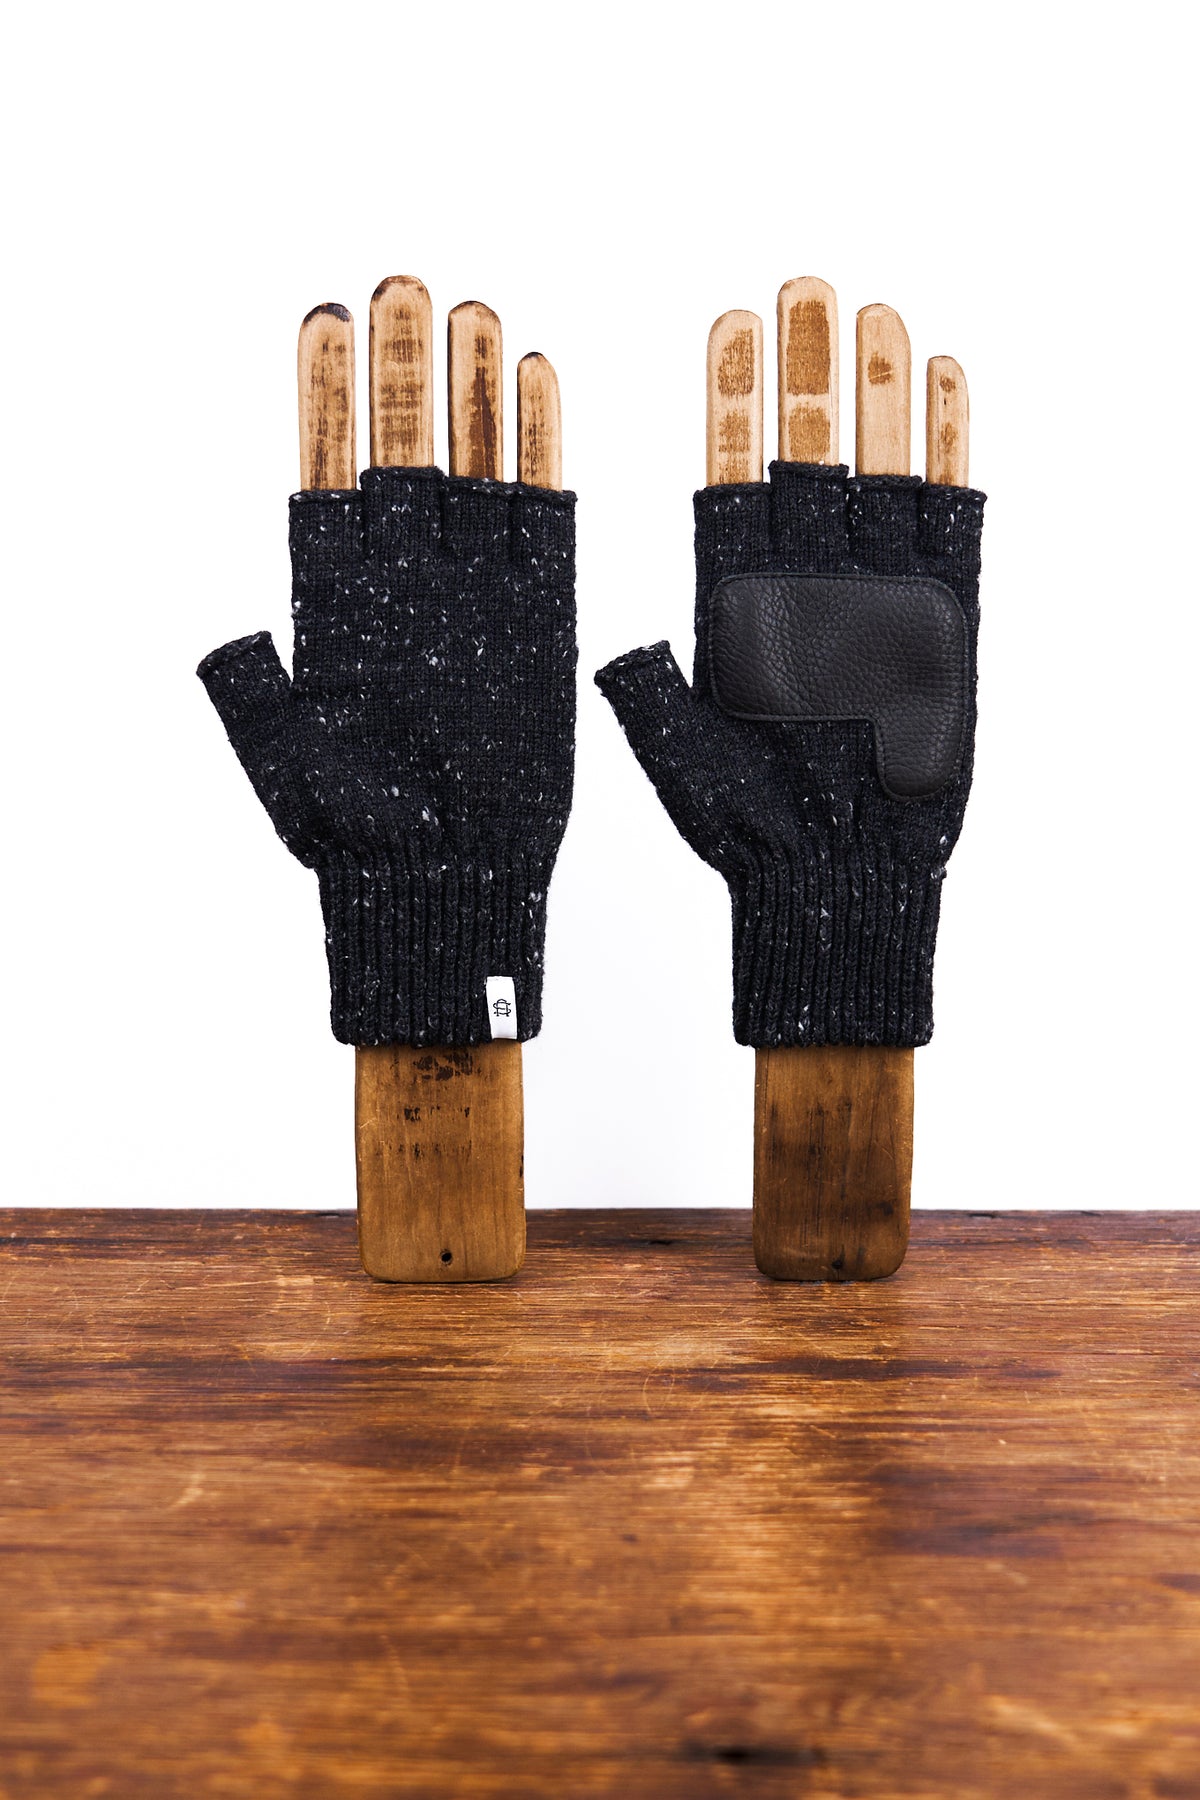 Black Tweed Fingerless Glove with Black Deerskin Palm